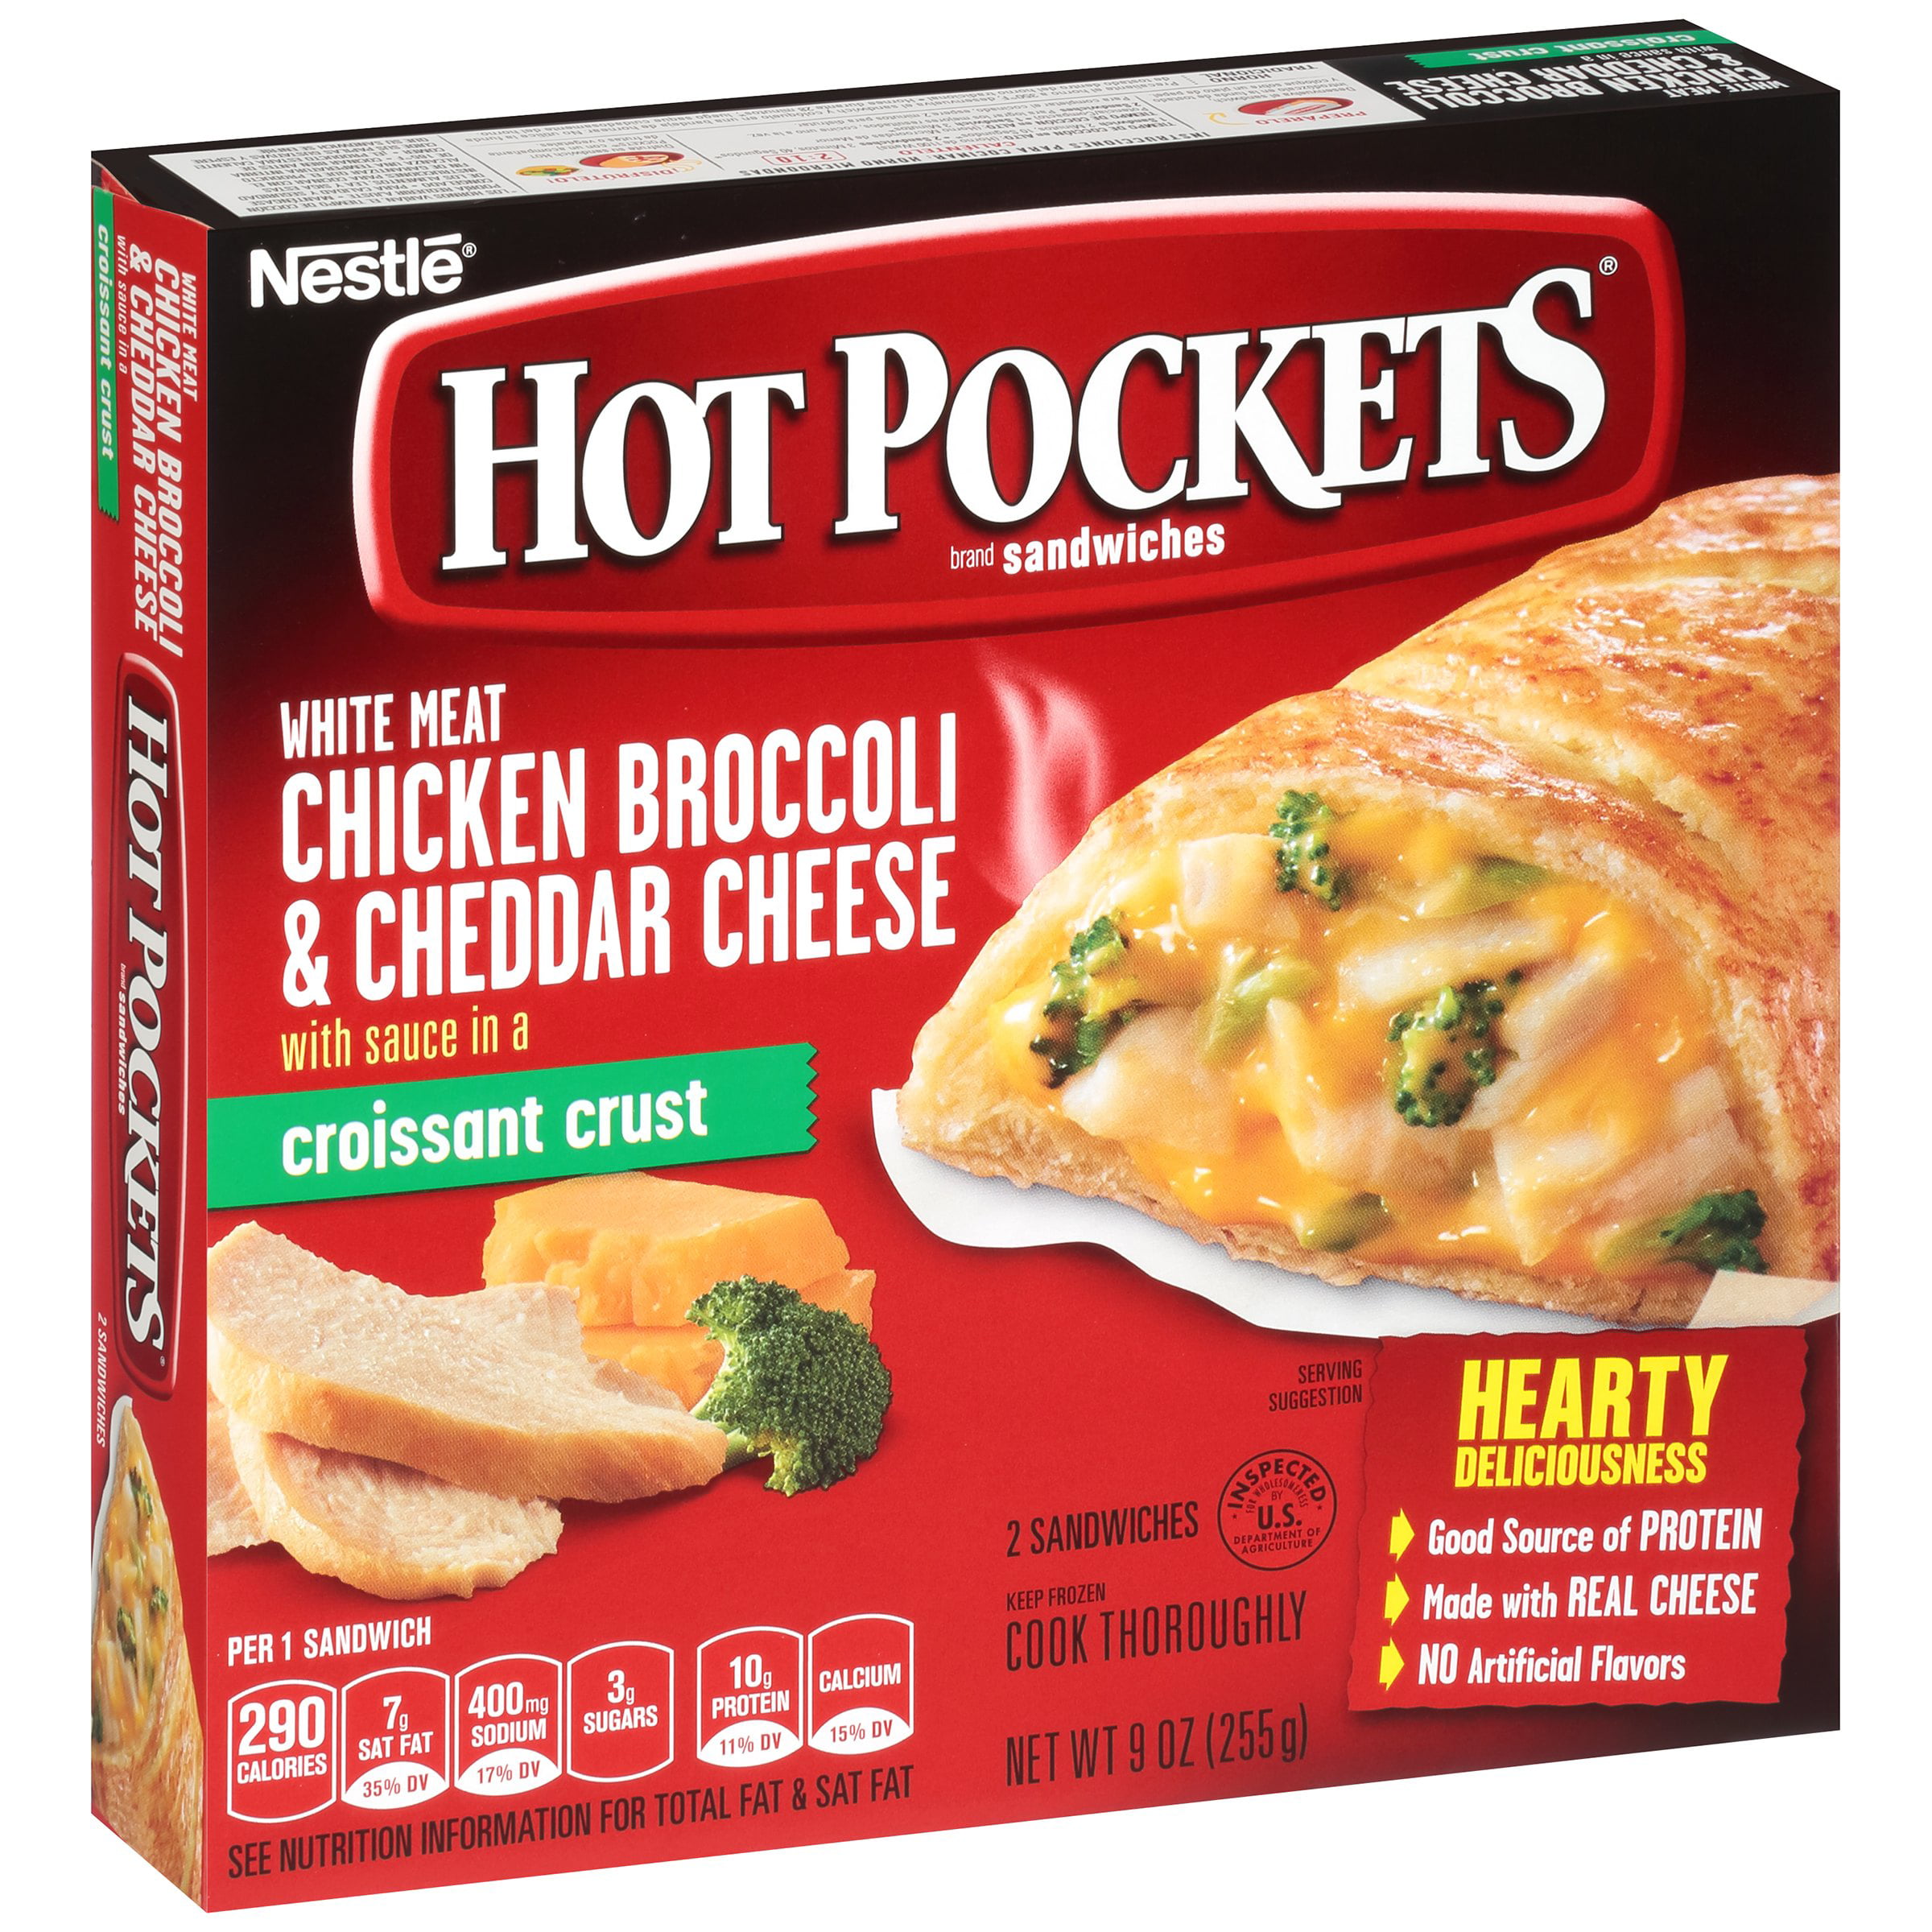 HOT POCKETS Chicken Broccoli & Cheddar Frozen Sandwiches 2 Ct Box. 